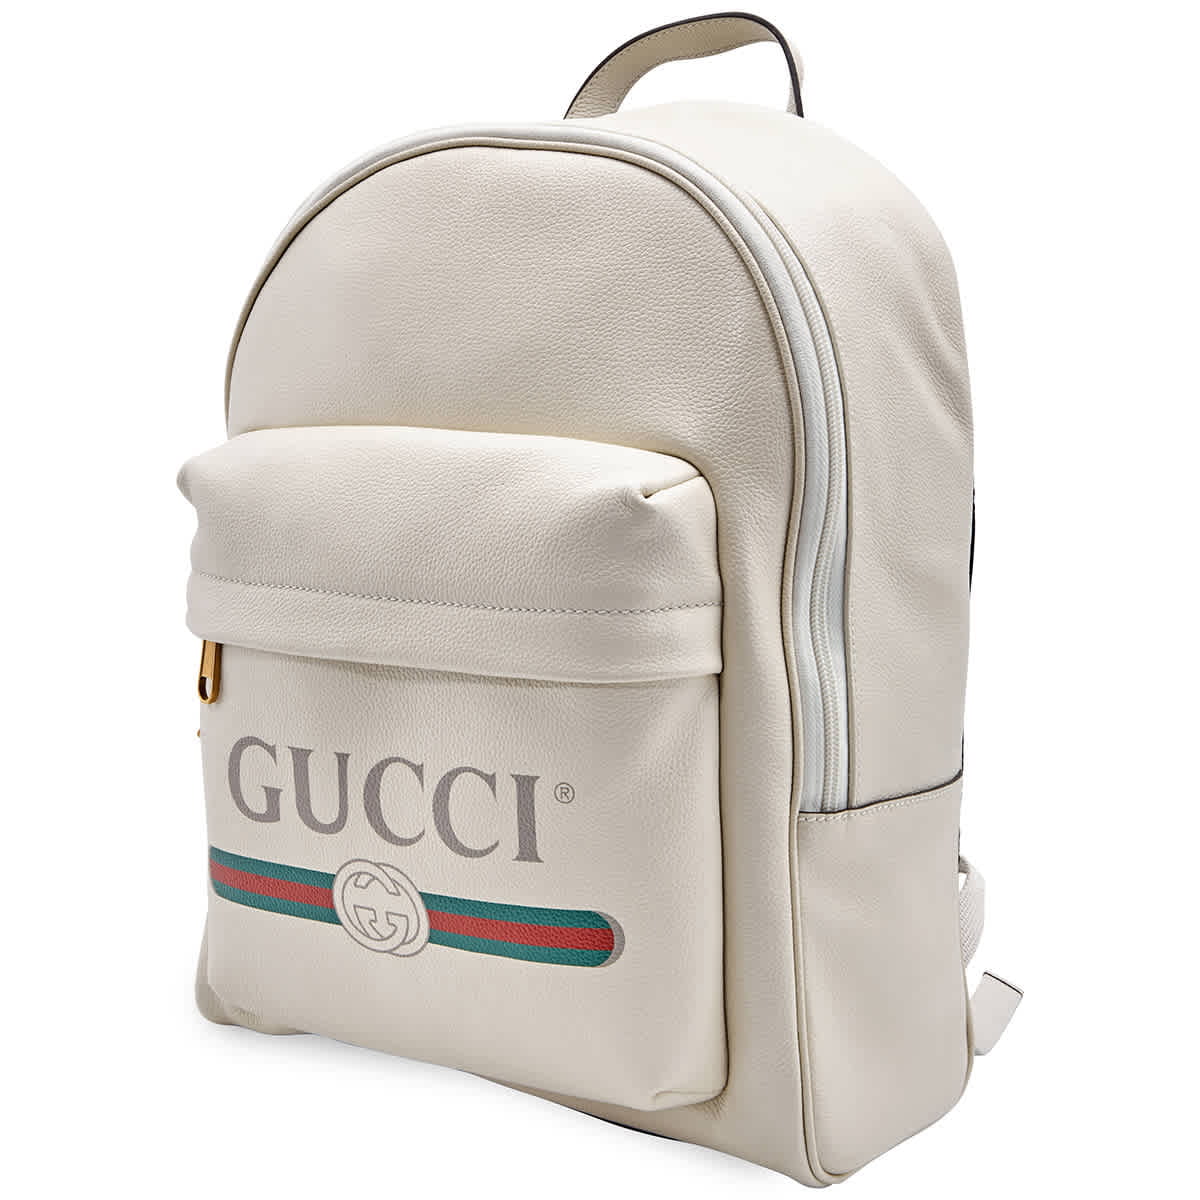 gucci school bag